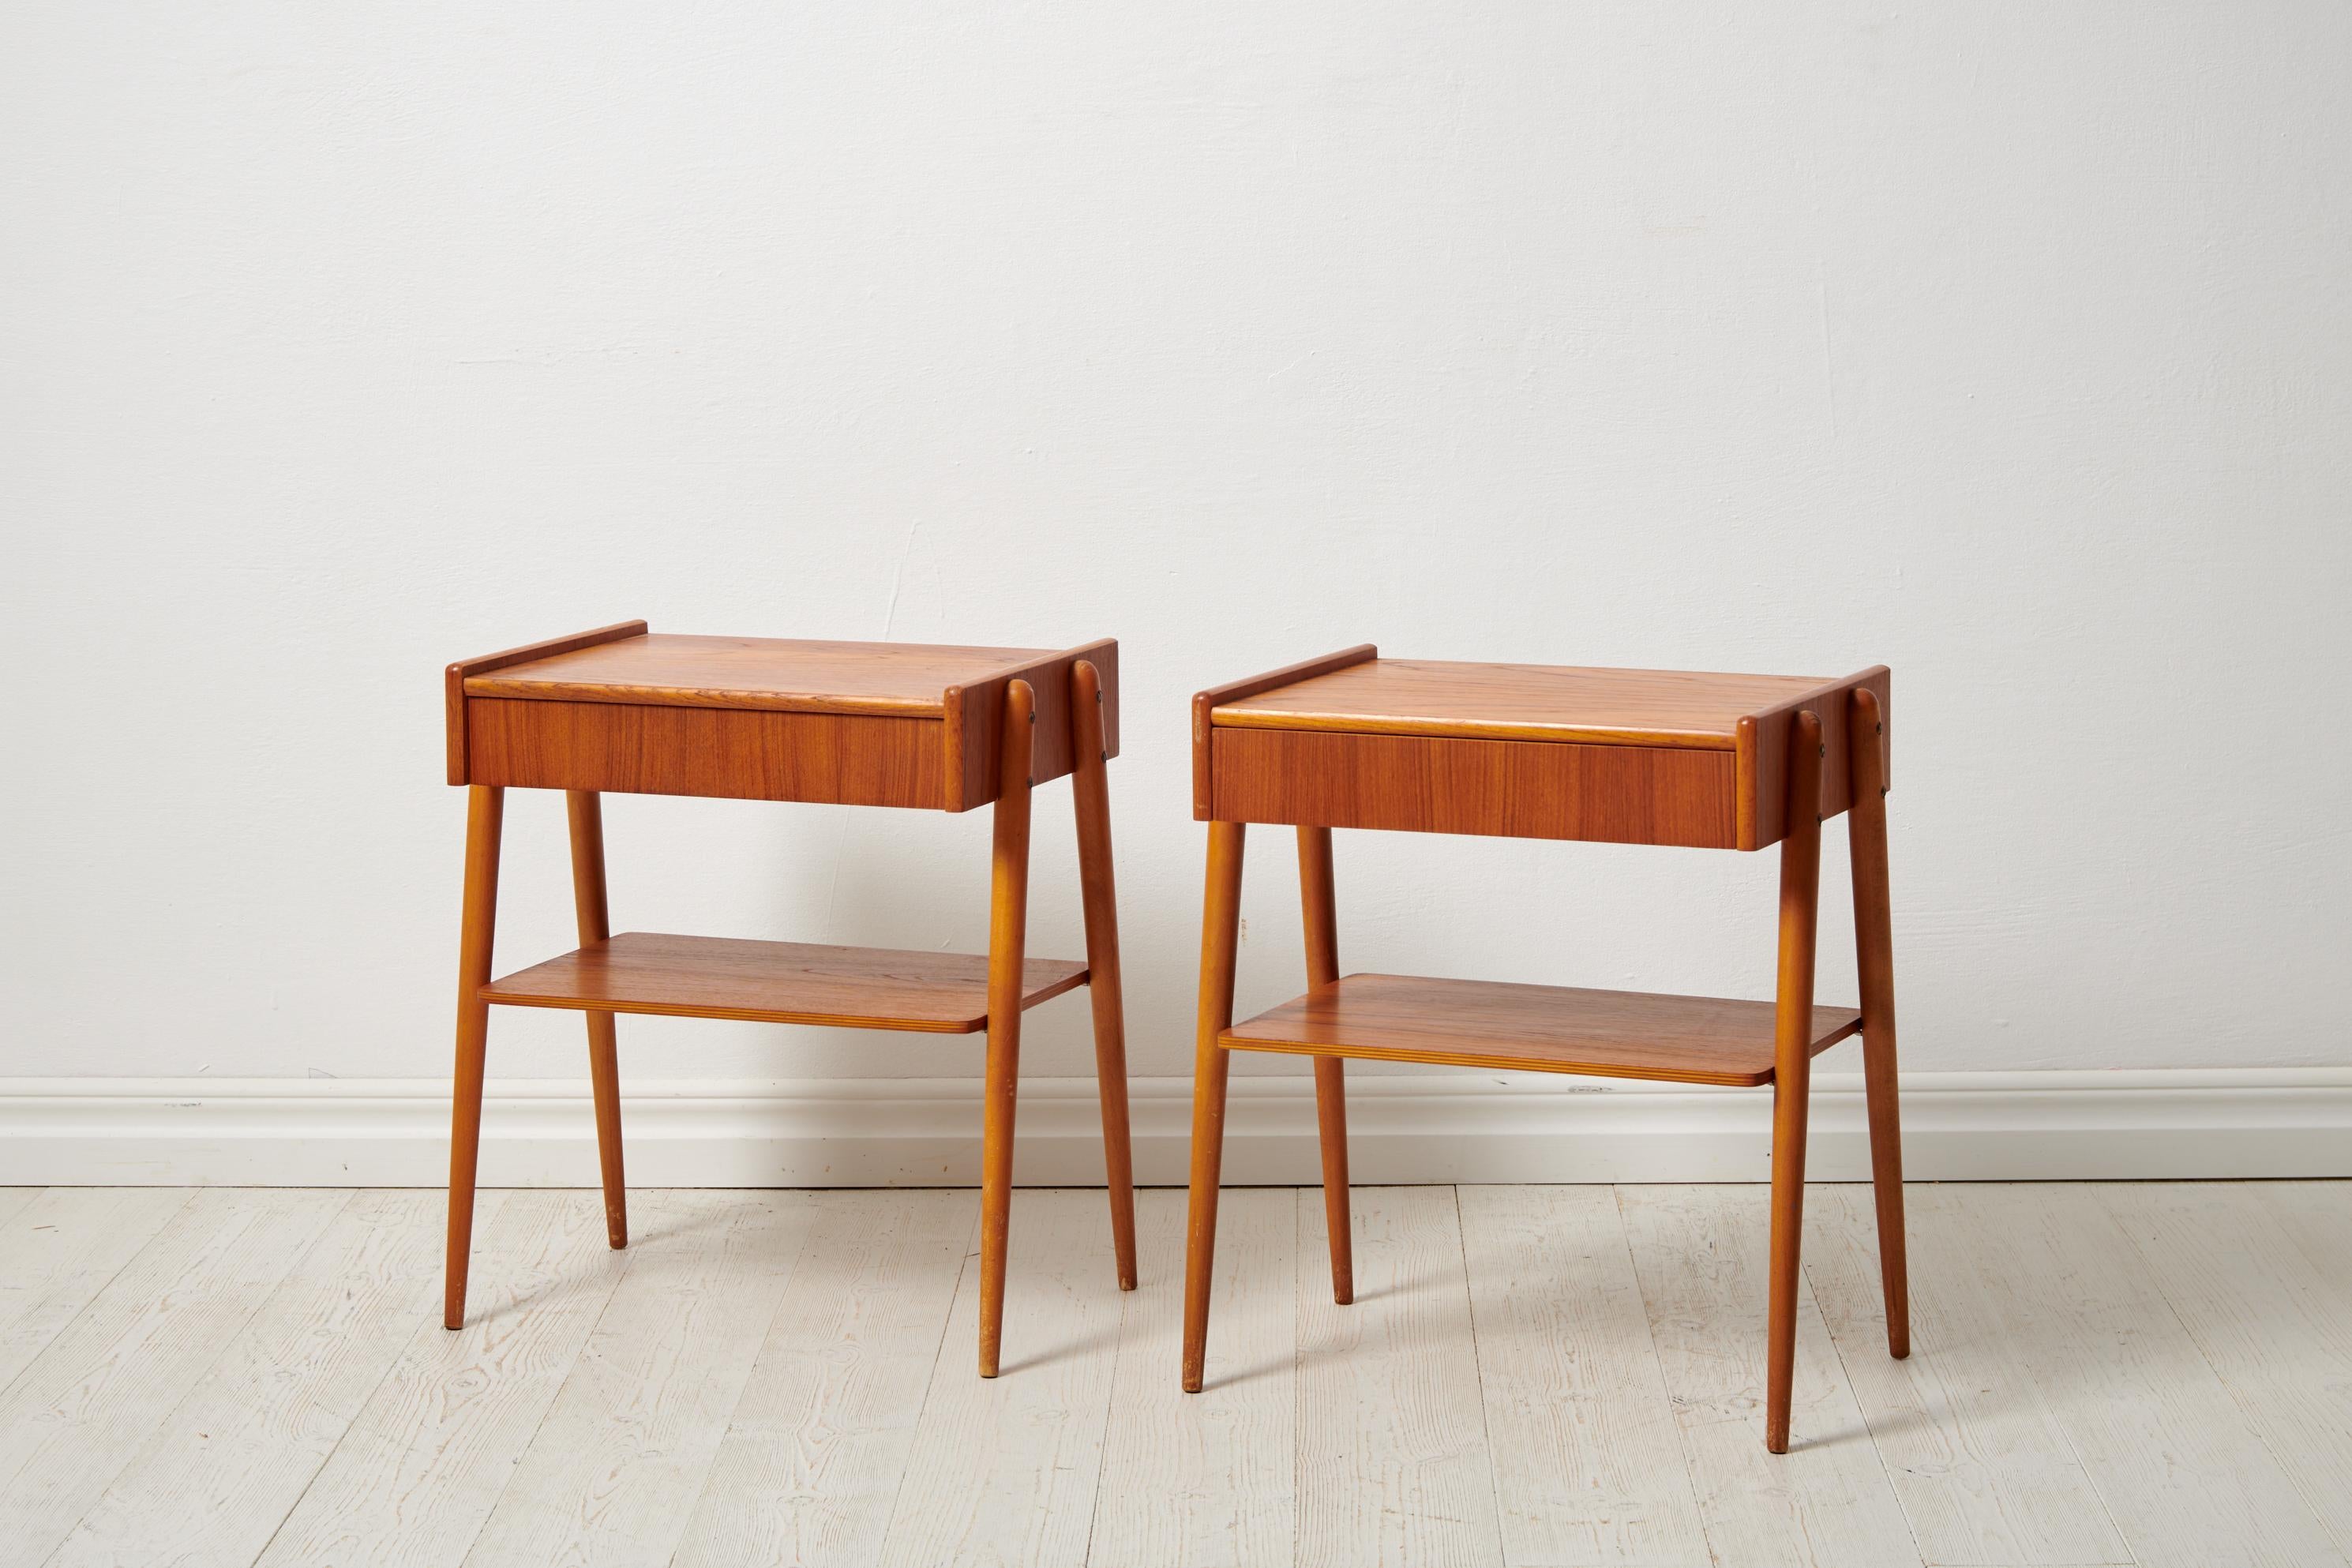 Entrez dans l'allure du milieu du siècle avec ces tables de nuit modernes suédoises en teck fabriquées par AB Carlssons & Co. möbelfabrik datant des années 1960. Ce duo dynamique comporte à la fois une étagère pratique et un tiroir, alliant